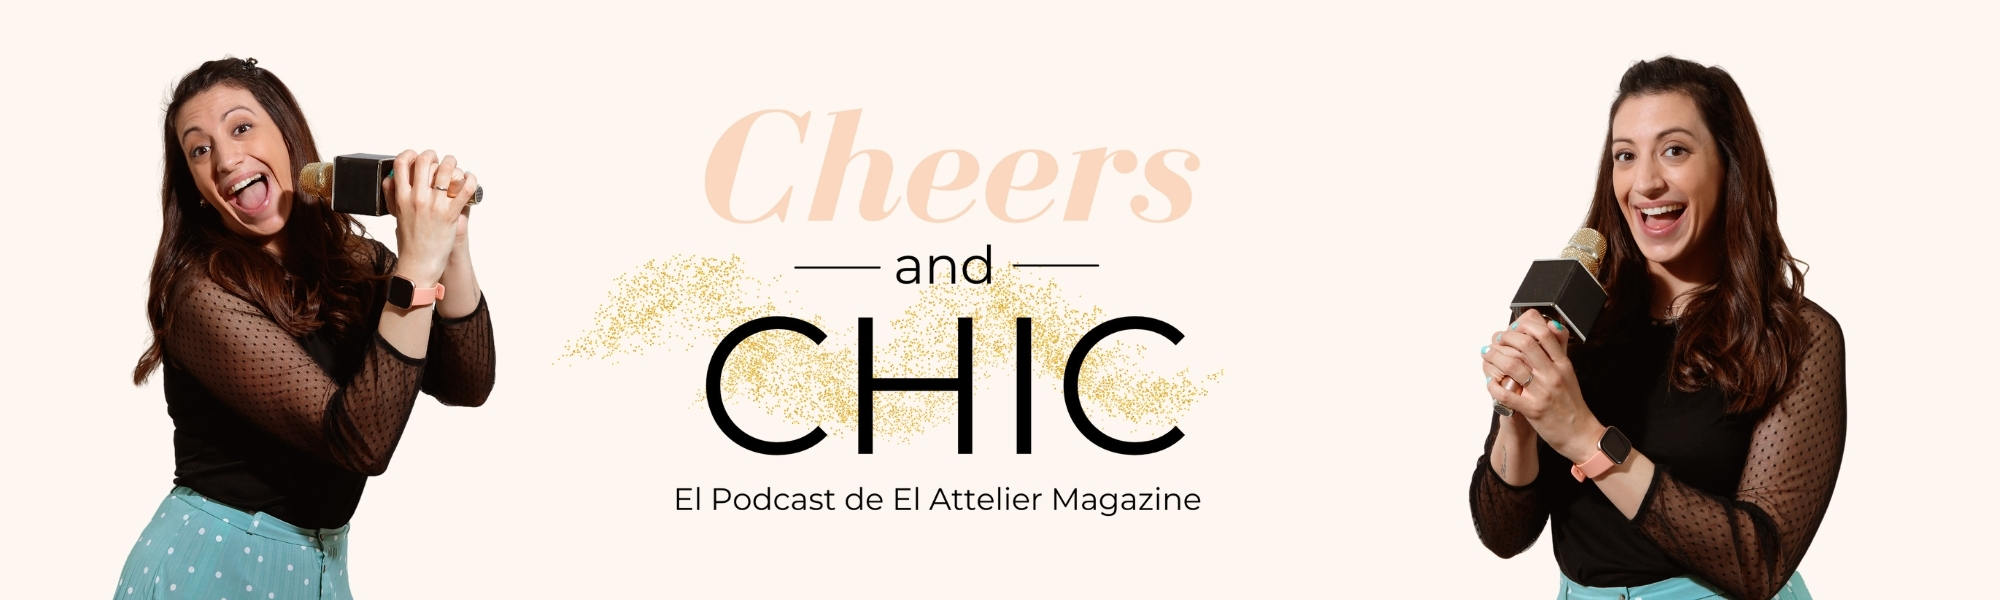 Cheers and chic, el podcast de El Attelier Magazine